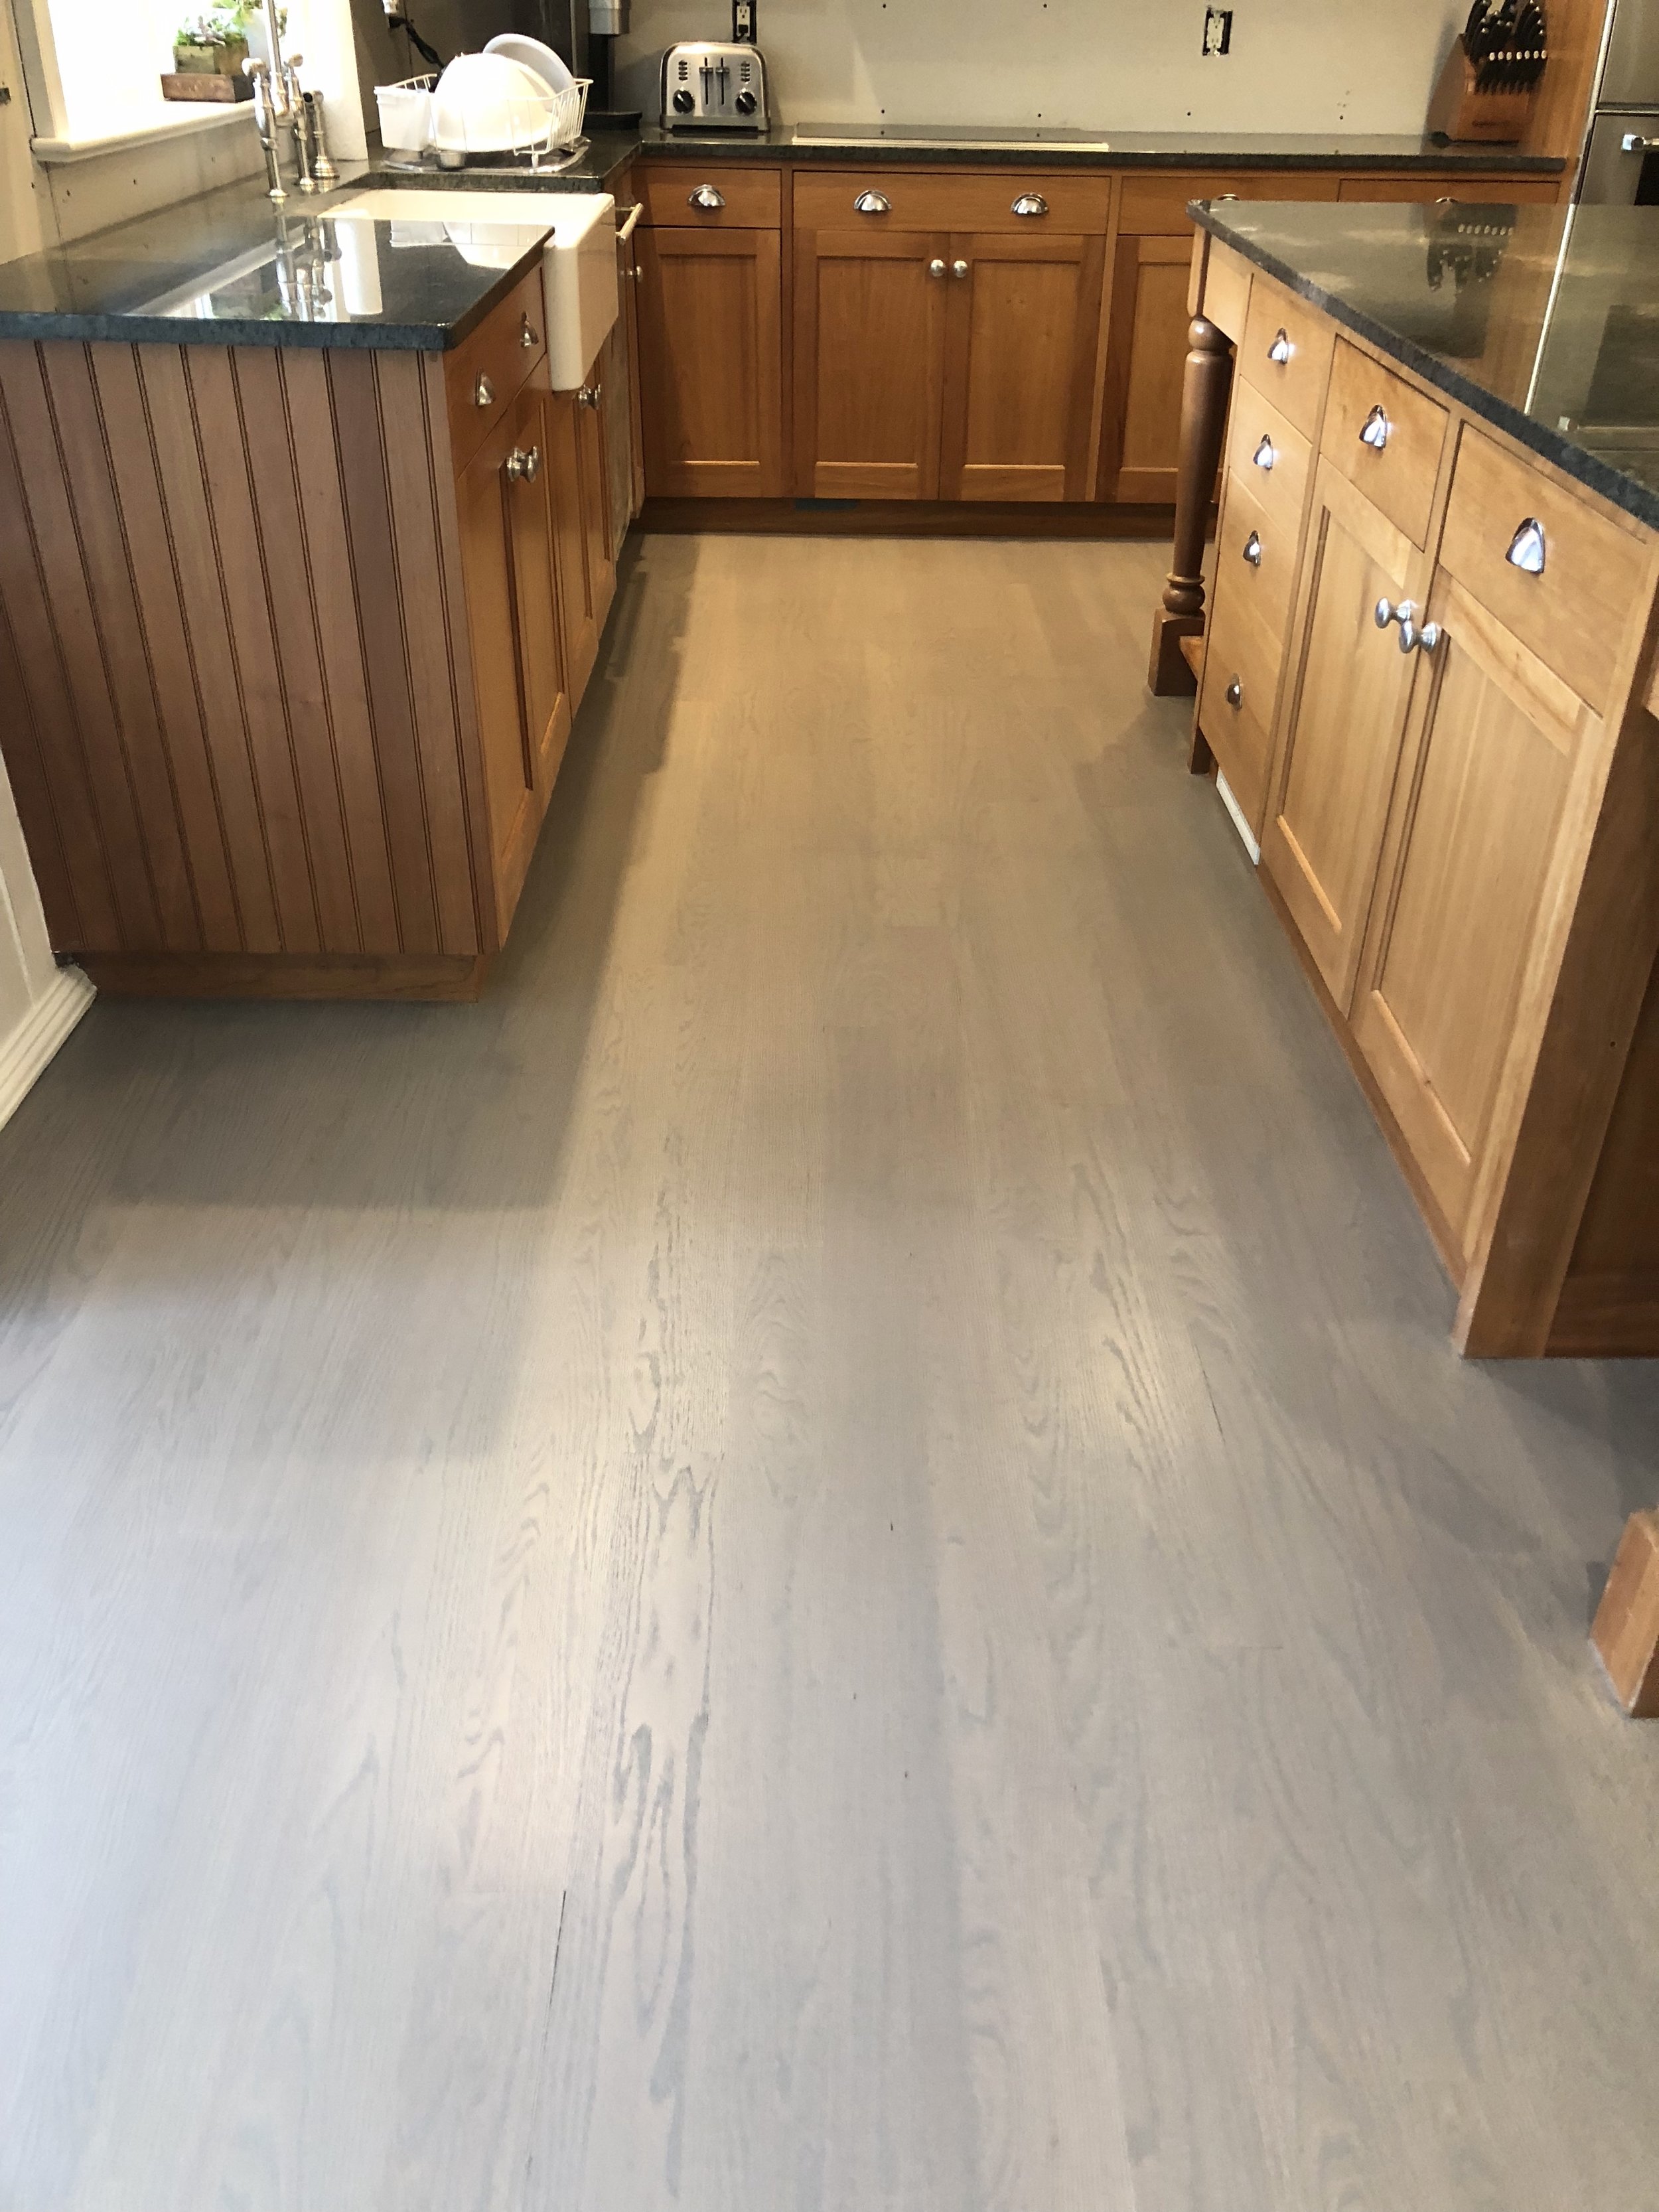 Modern Dark Wood Kitchen Cabinets Grey Floor